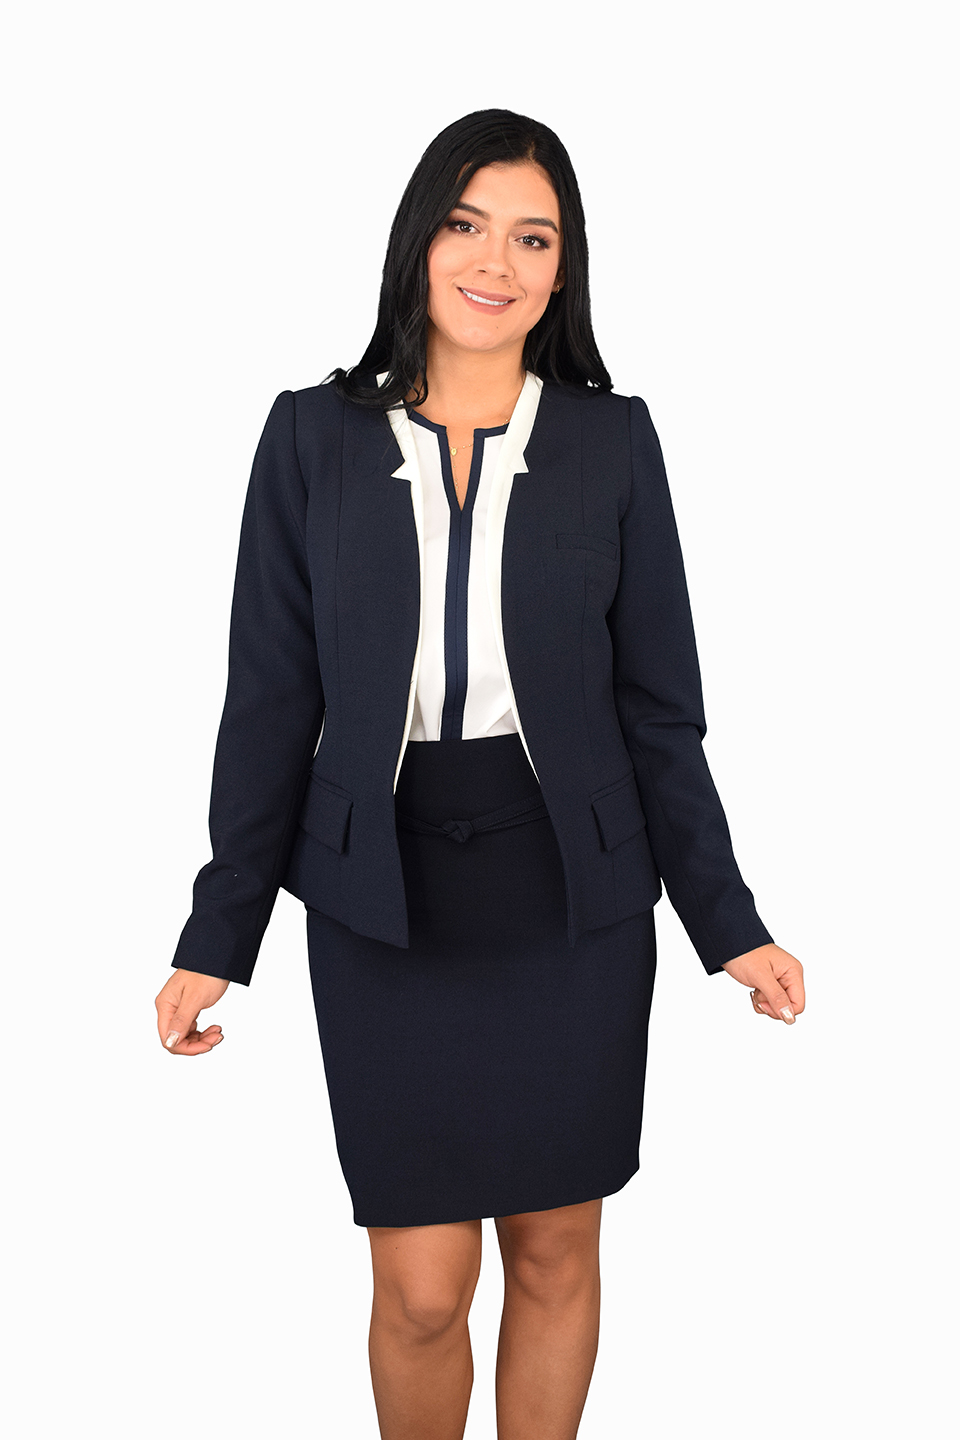 uniforme empresarial linea ejecutiva ref: pelikan  Celmy diseño y  fabricación de uniformes empresariales y uniformes ejecutivos